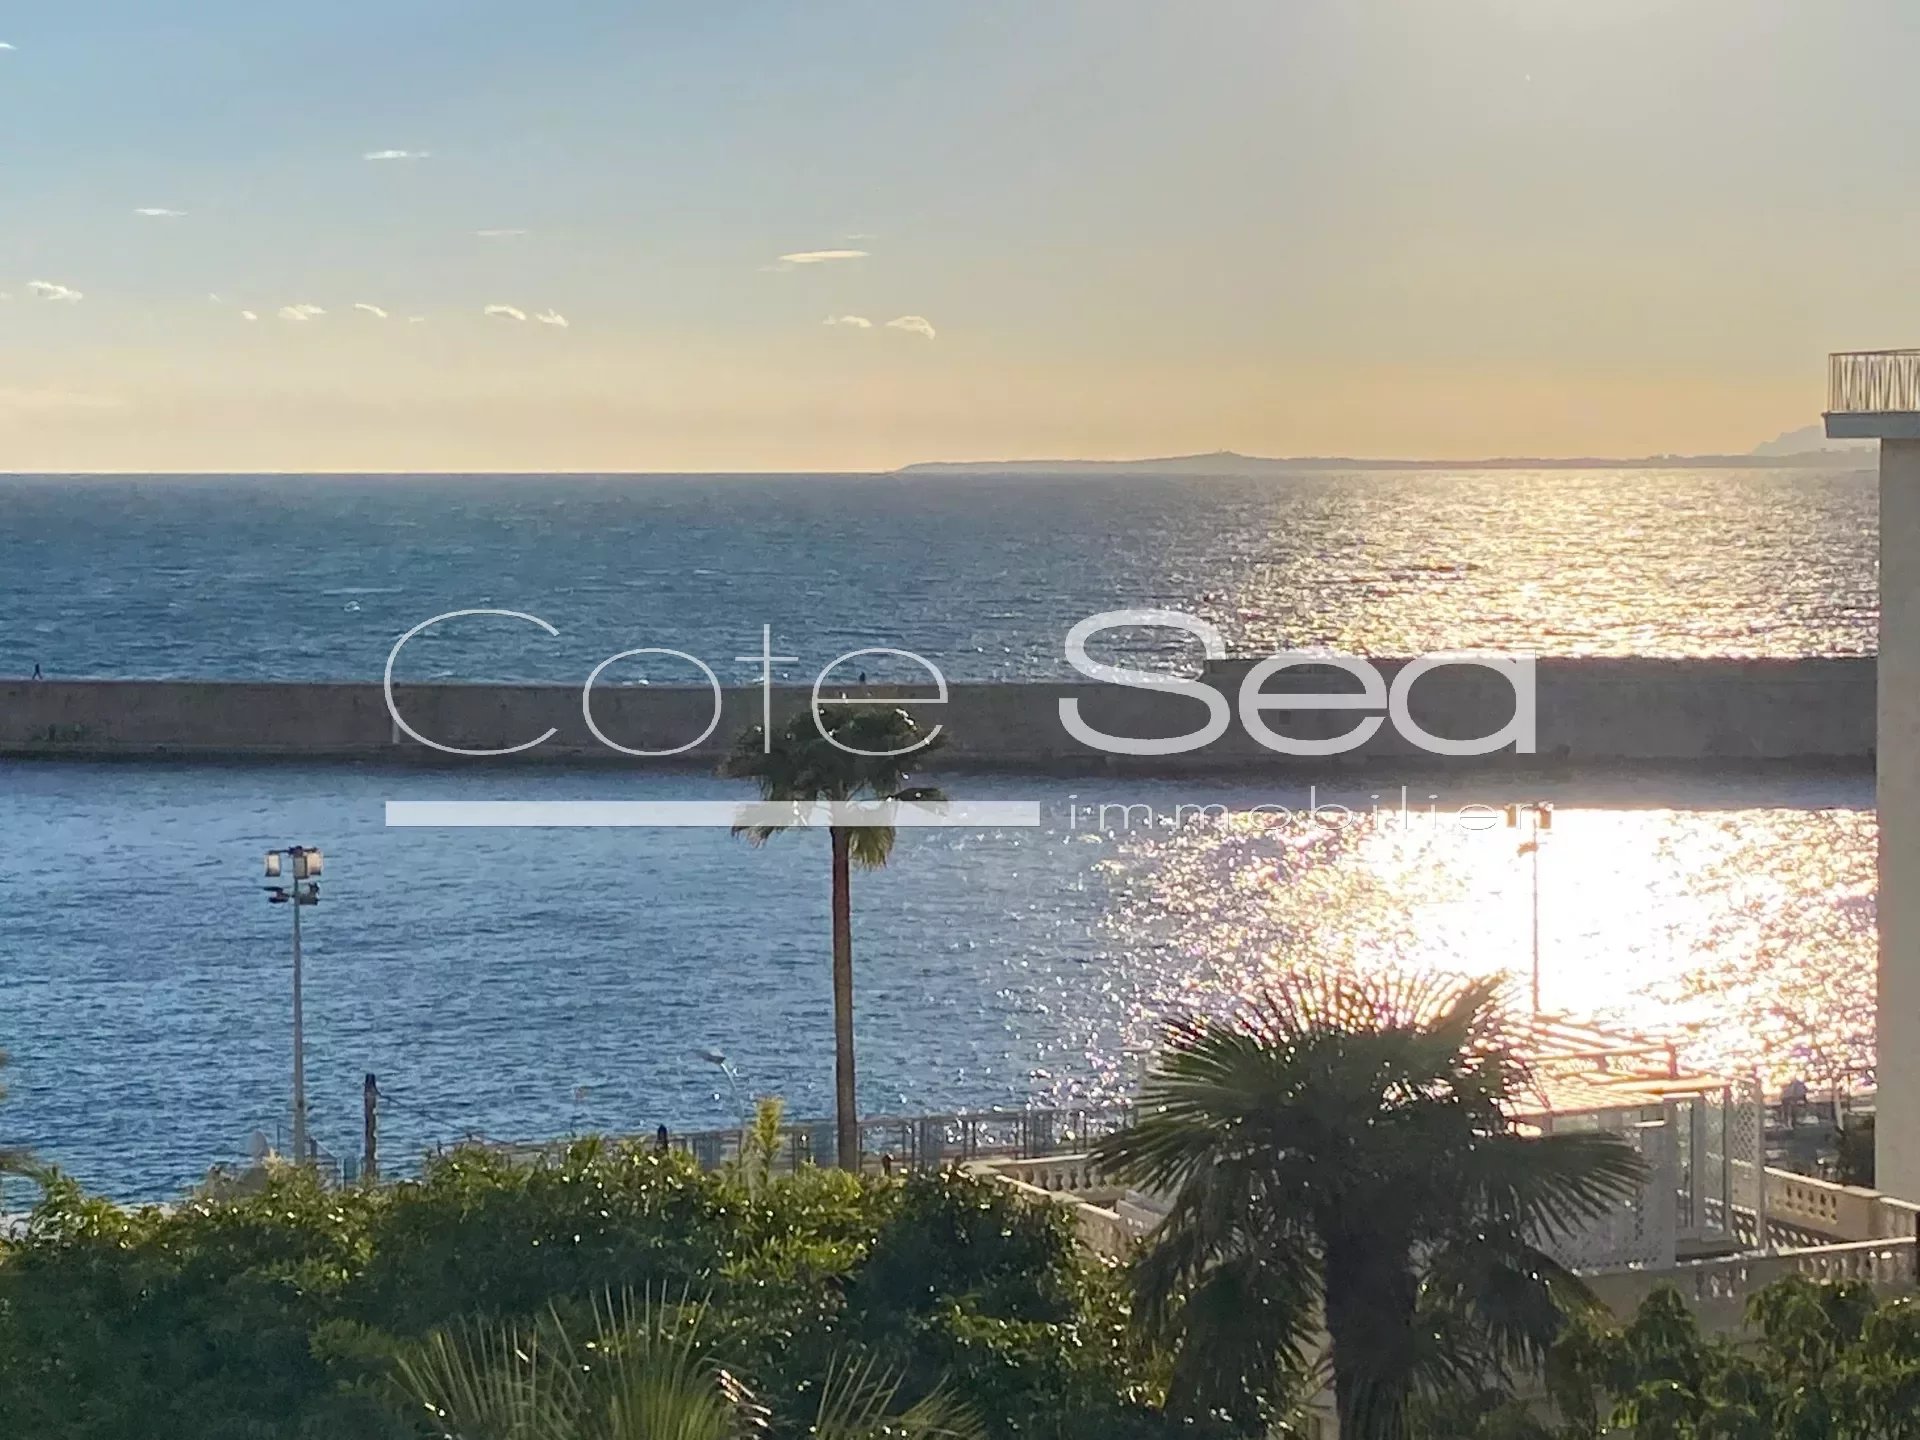 Vente Appartement 58m² 3 Pièces à Nice (06300) - Cote Sea Immobilier